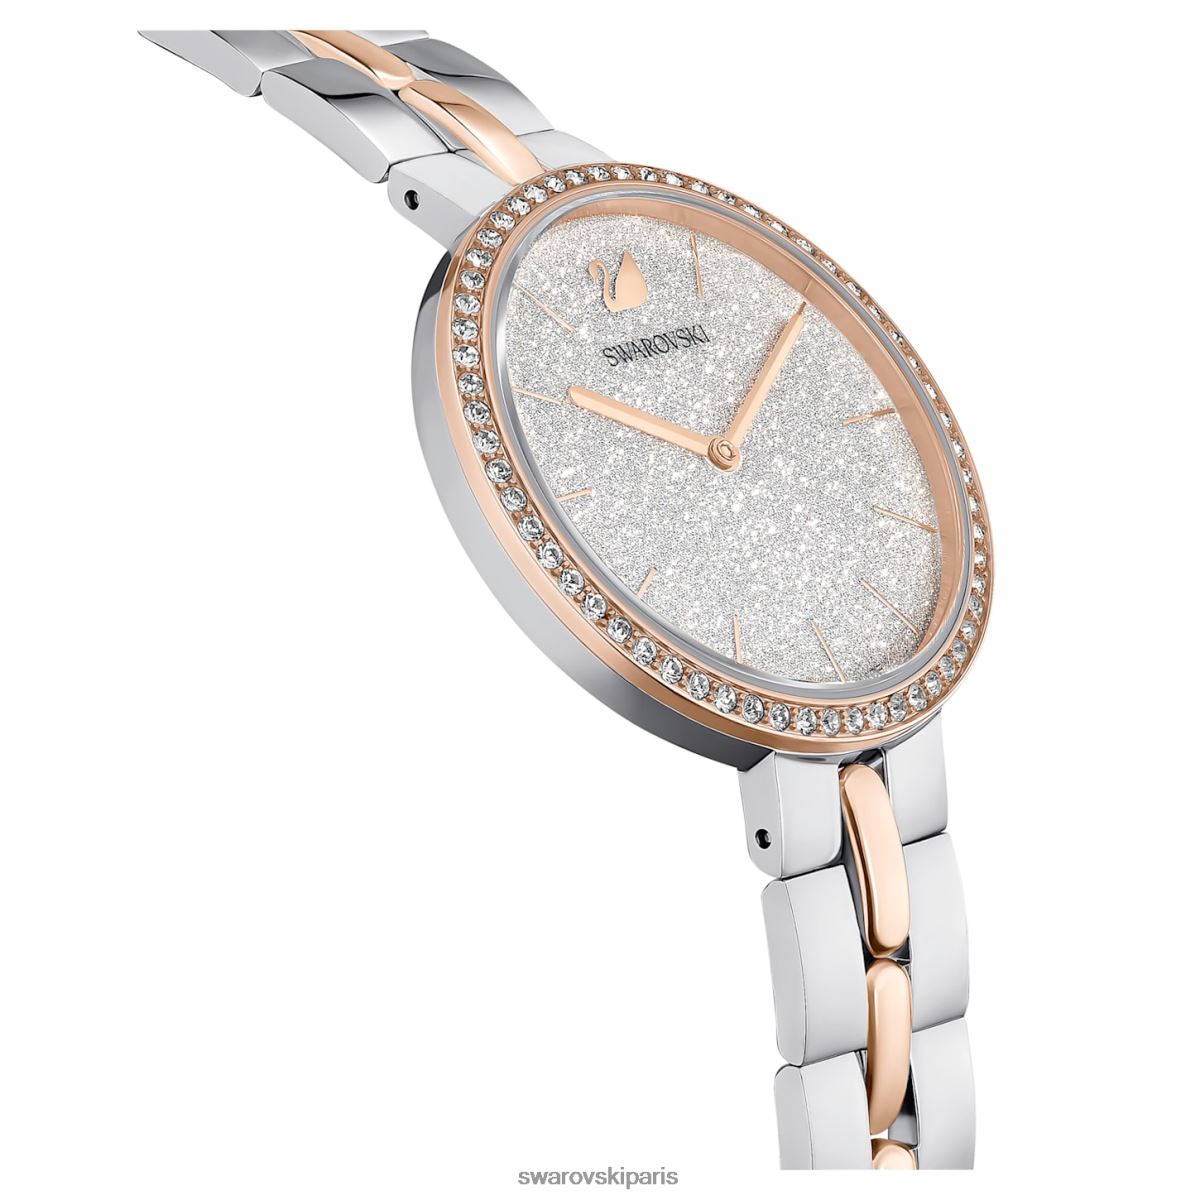 accessoires Swarovski montre cosmopolite fabrication suisse, bracelet en métal, blanc, finition métaux mixtes RZD0XJ1156